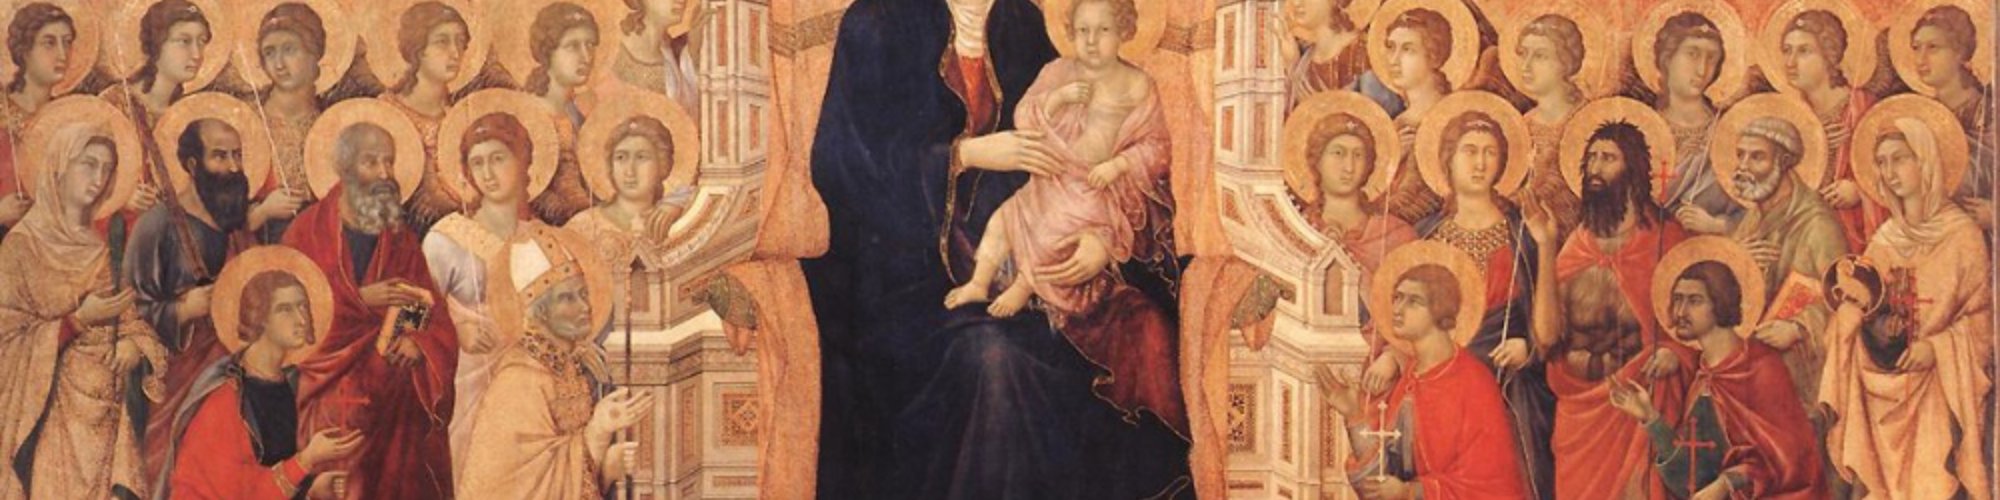 Maestà of Duccio - Siena